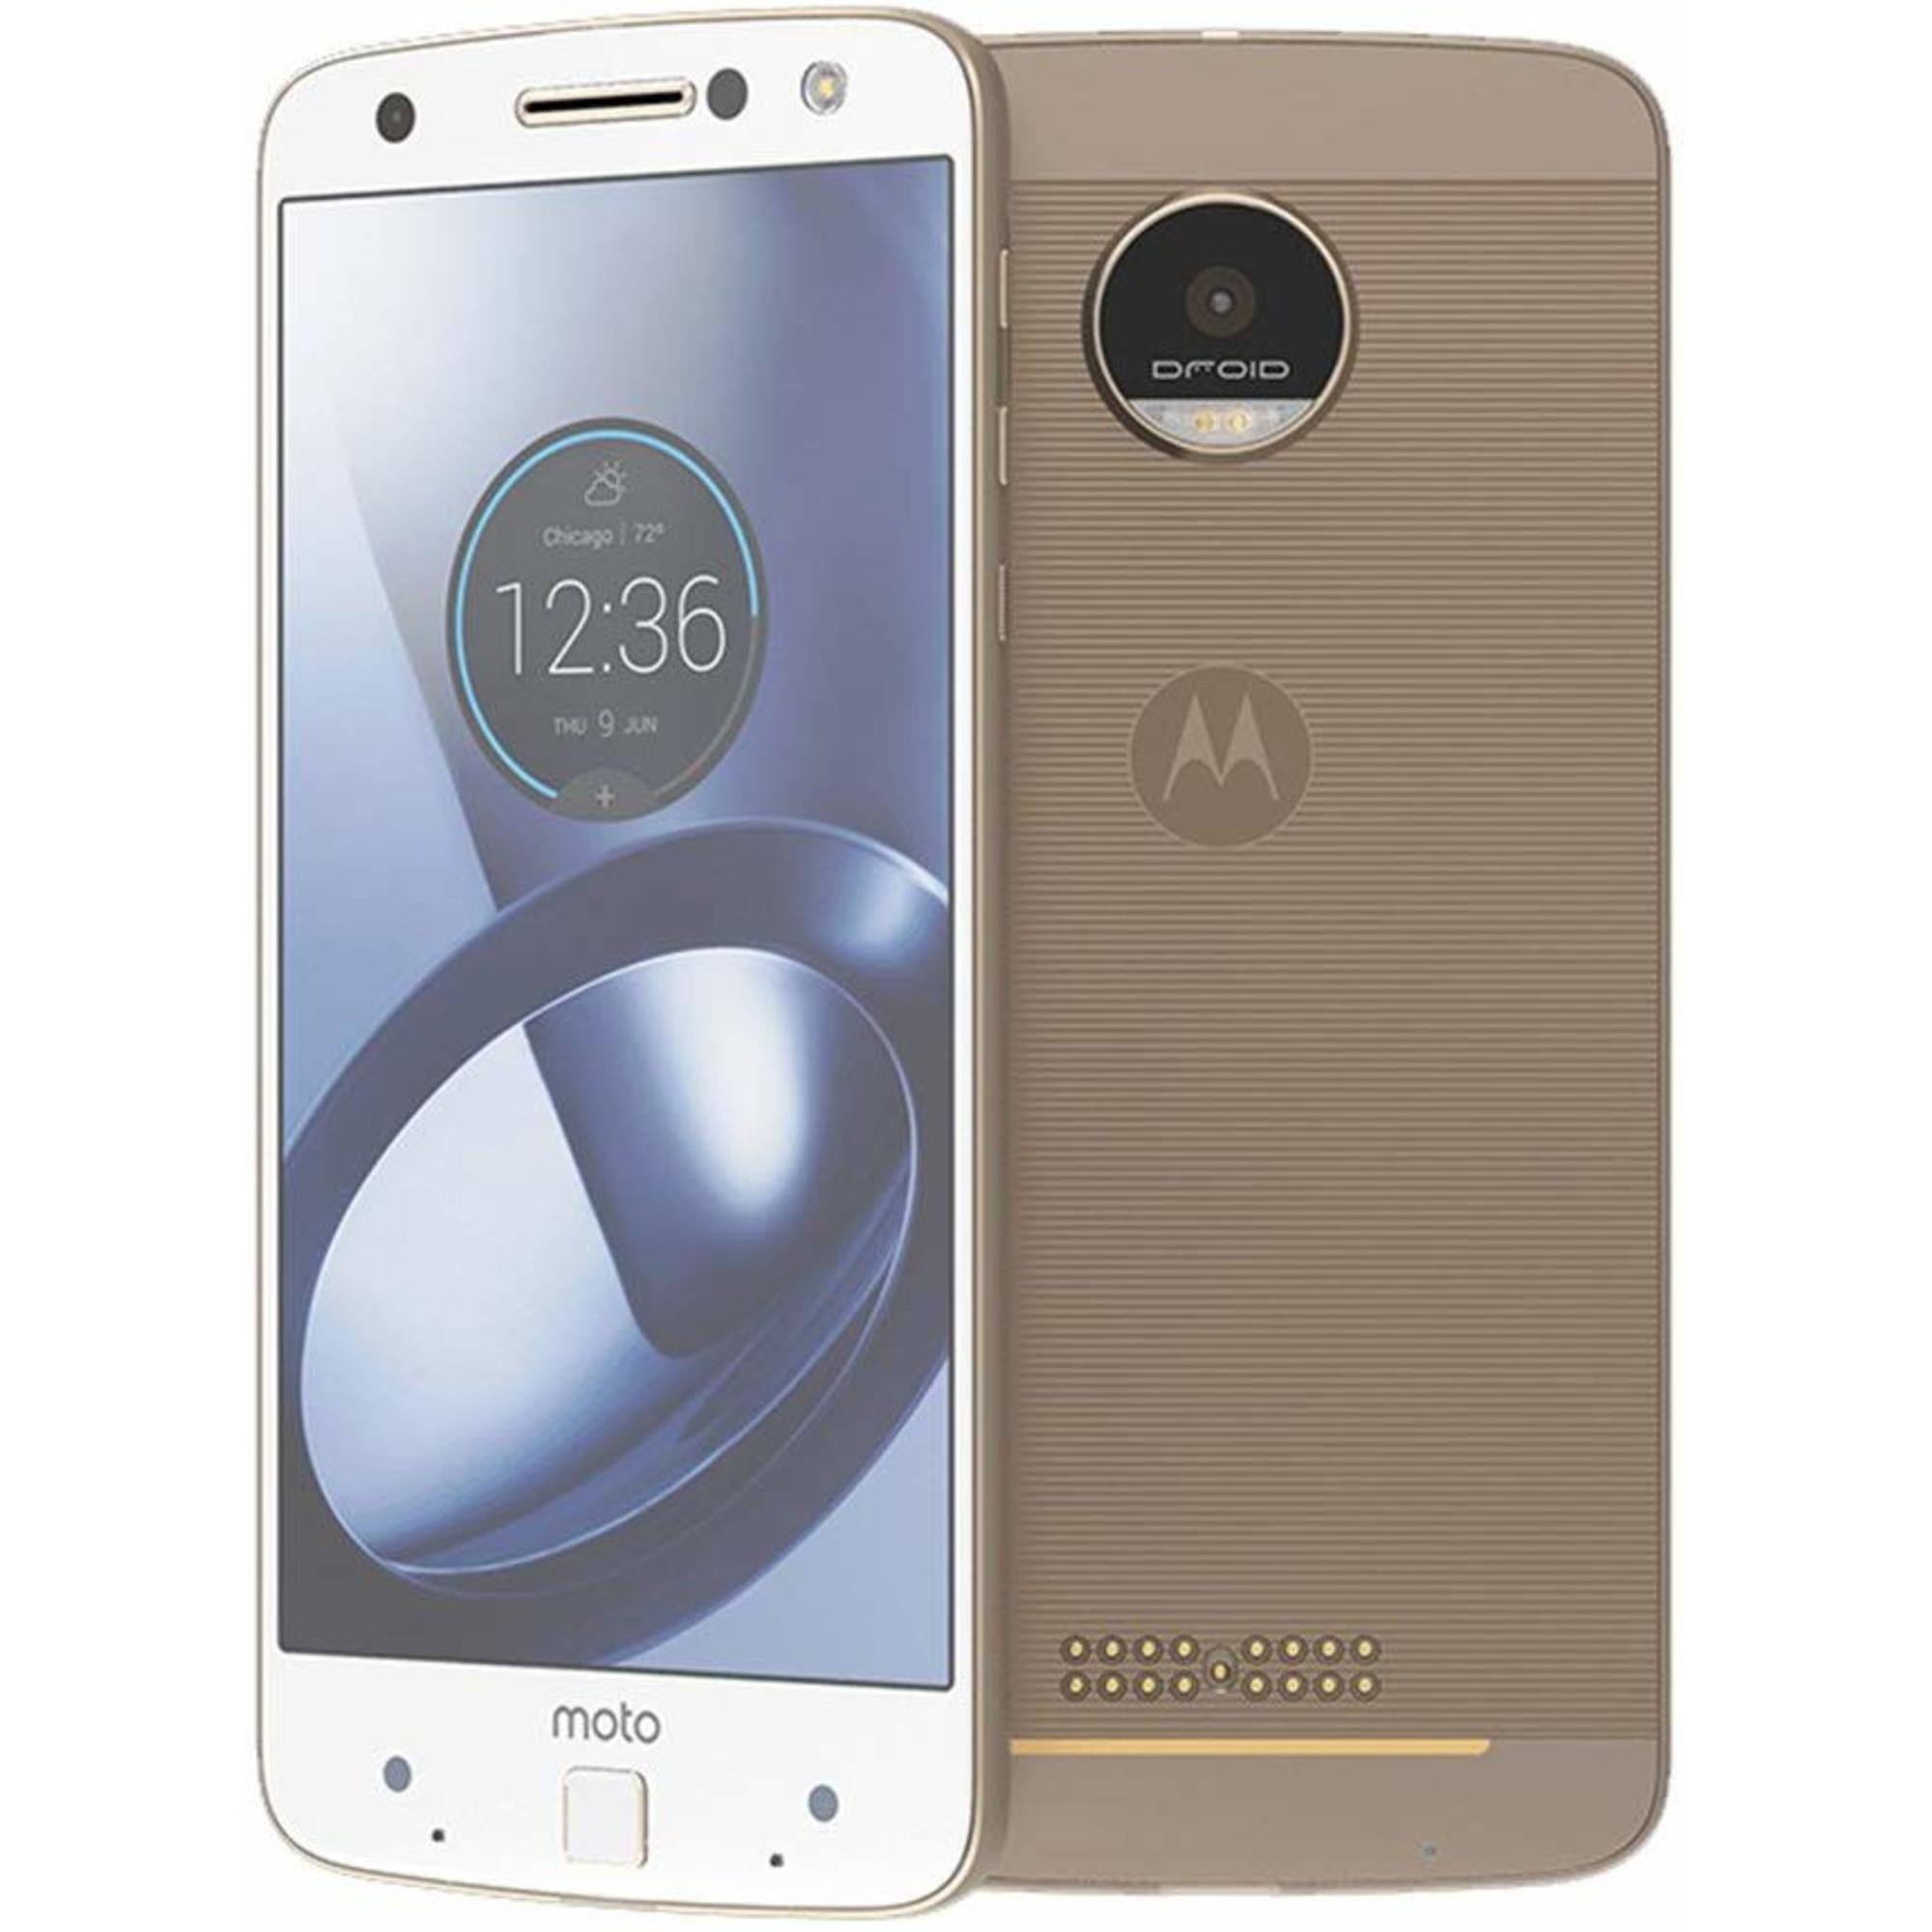 maak een foto Sluit een verzekering af regiment Restored Motorola Moto Z Play XT1650 64GB Verizon Smartphone w/ 13MP Camera  - White/Gold (Refurbished) - Walmart.com